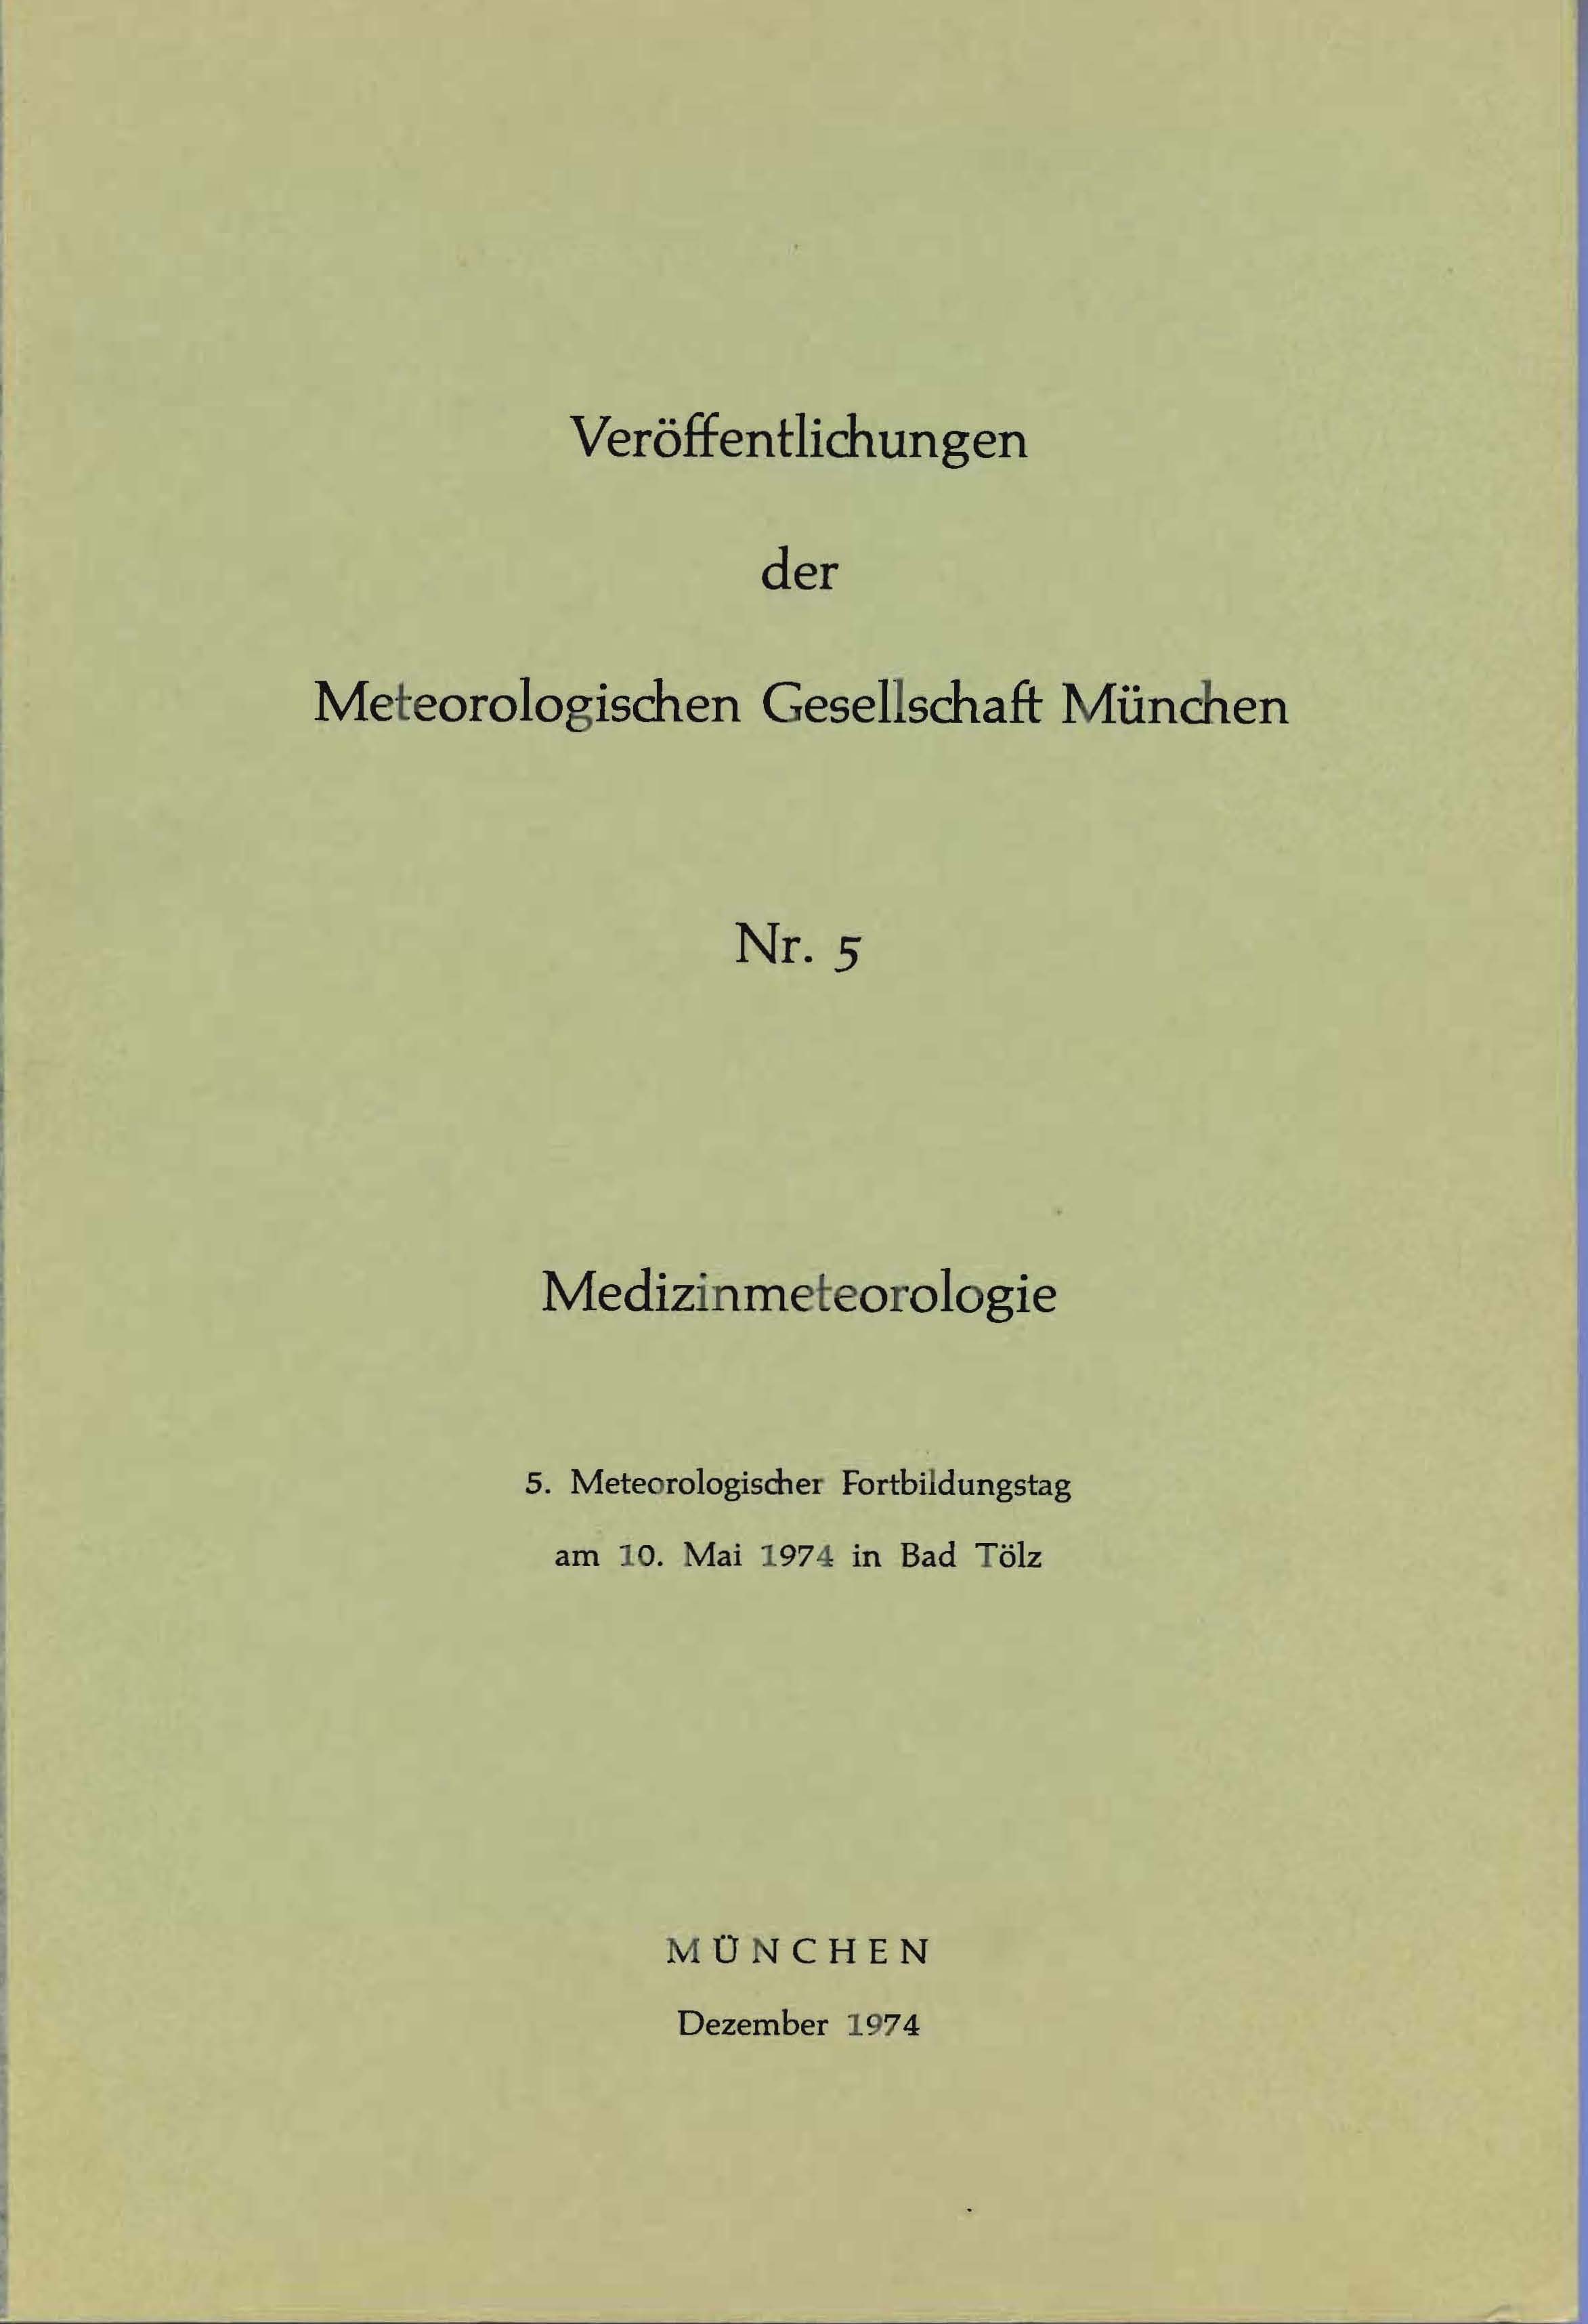 Veröffentlichung der Meterologischen Gesellschaft München